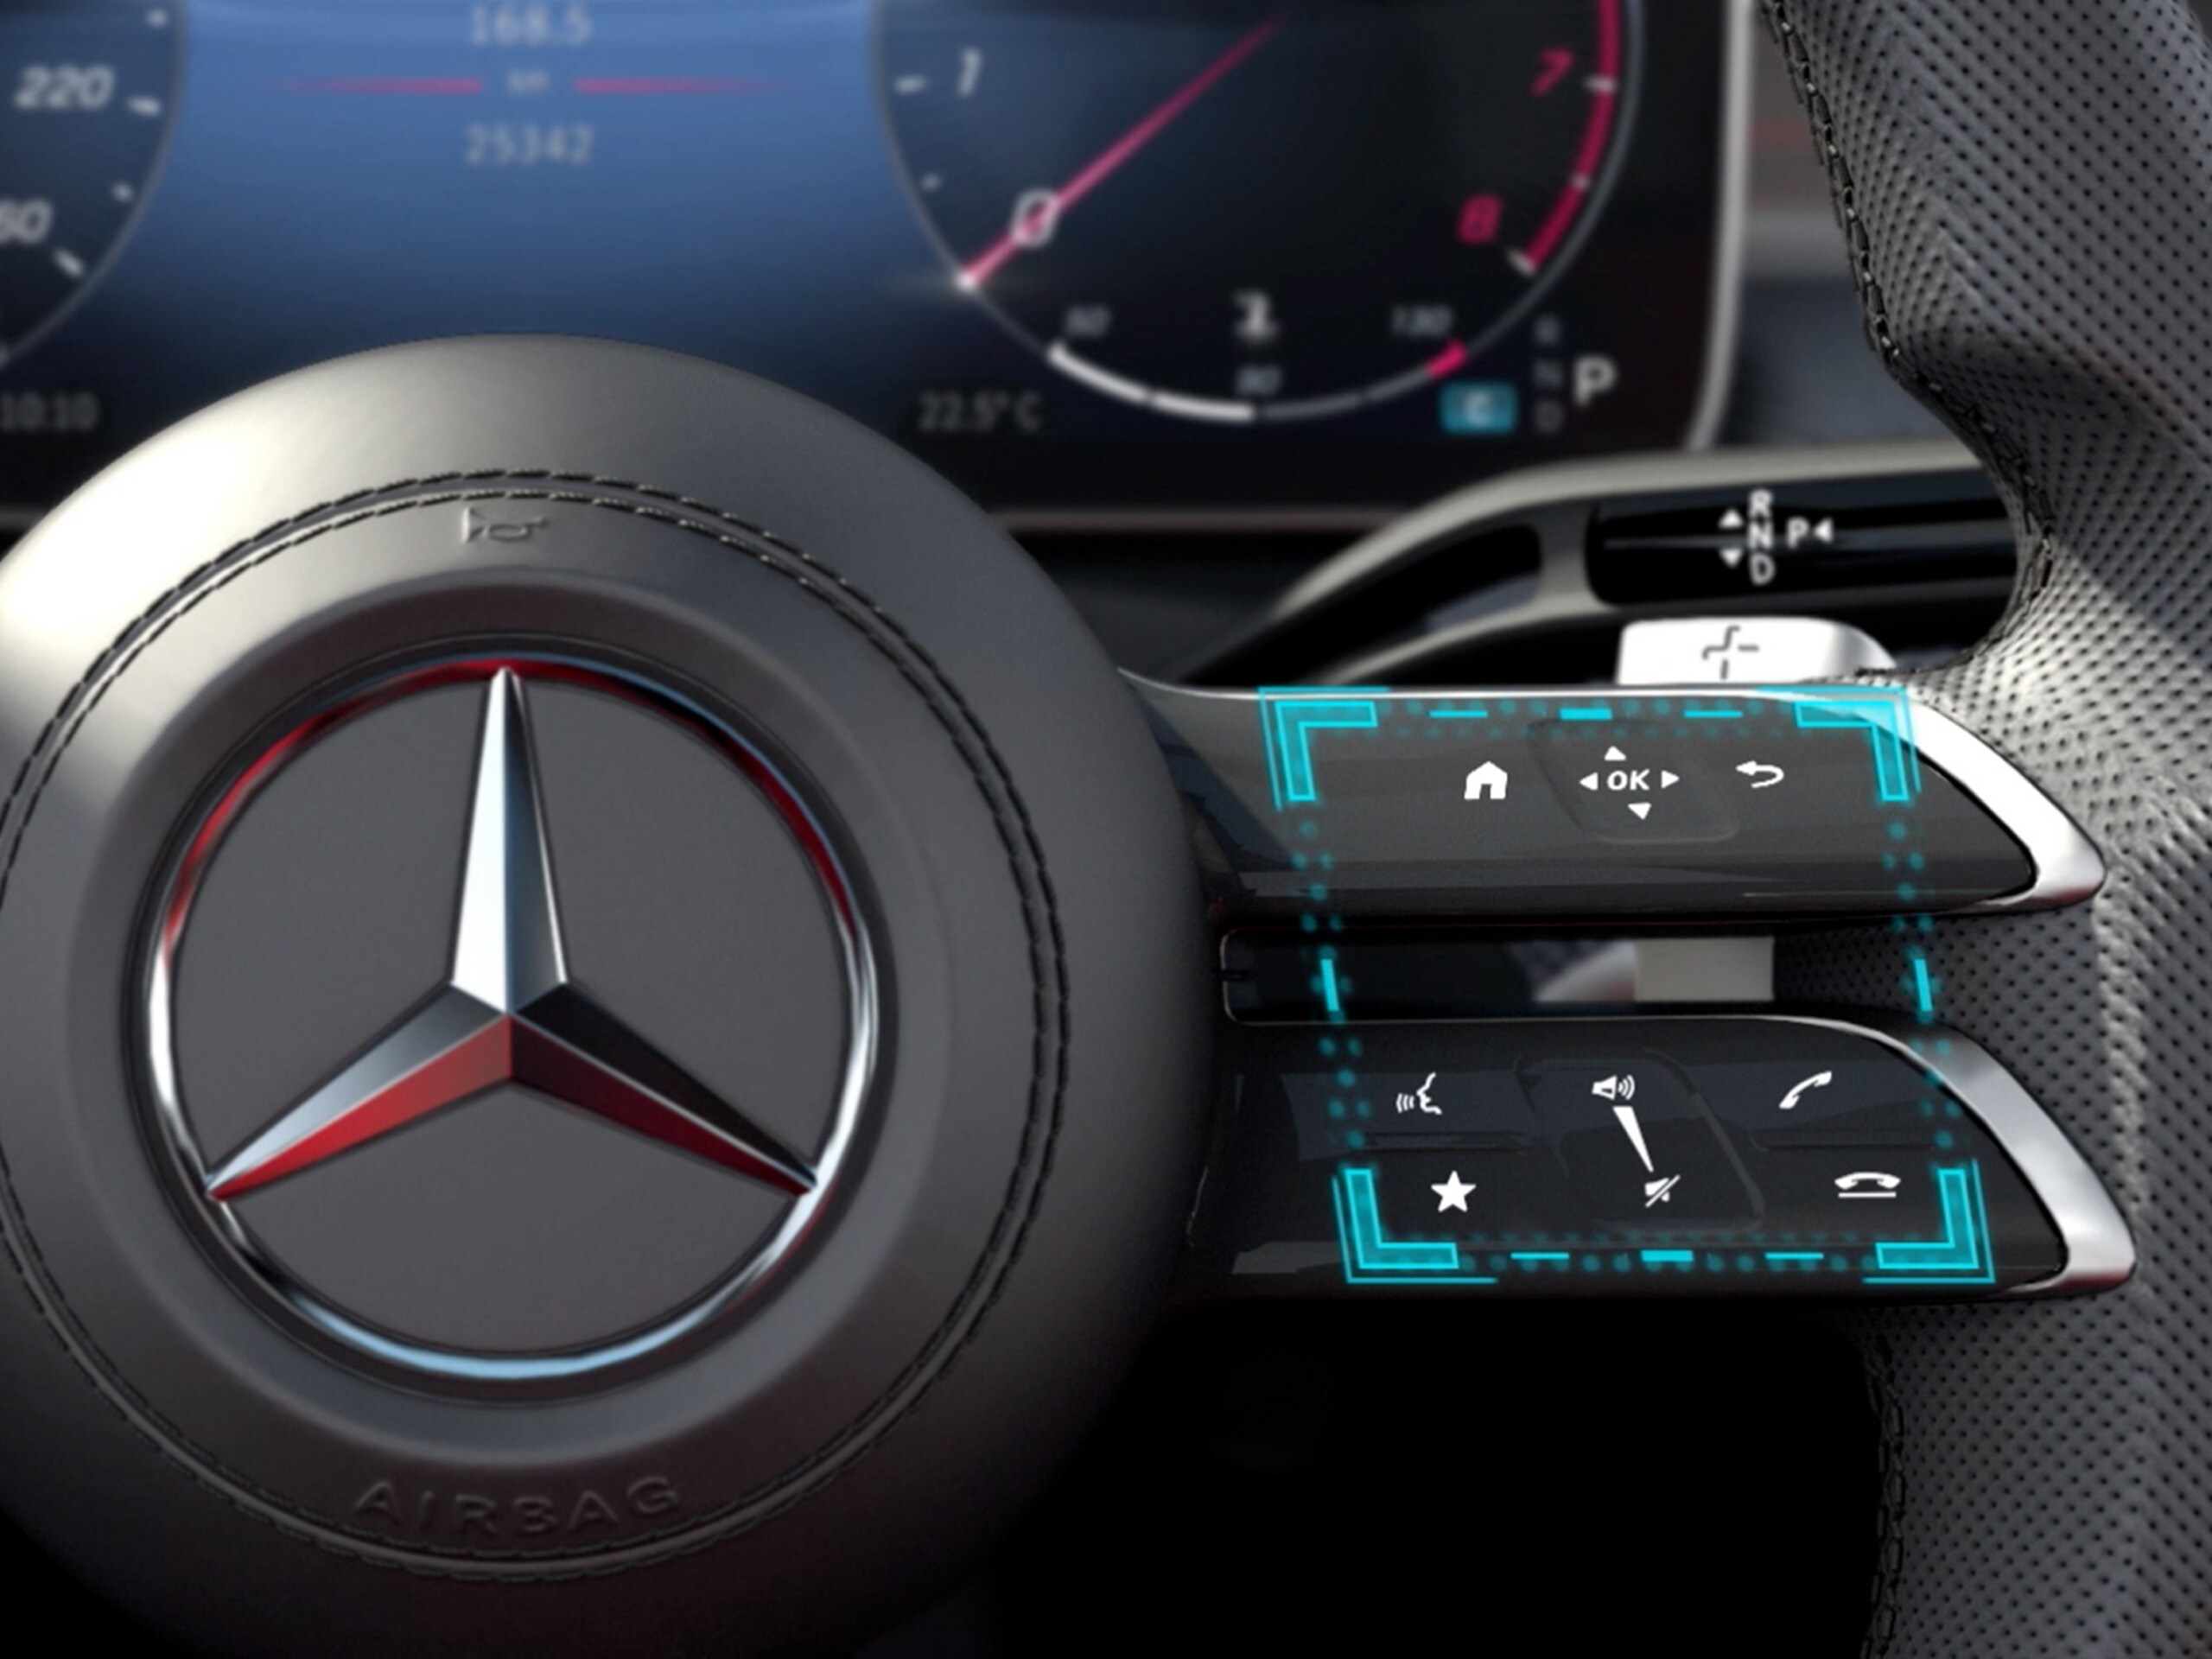 Video mô tả chức năng của công nghệ điều khiển bằng cảm ứng MBUX trên xe Mercedes-Benz C-Class